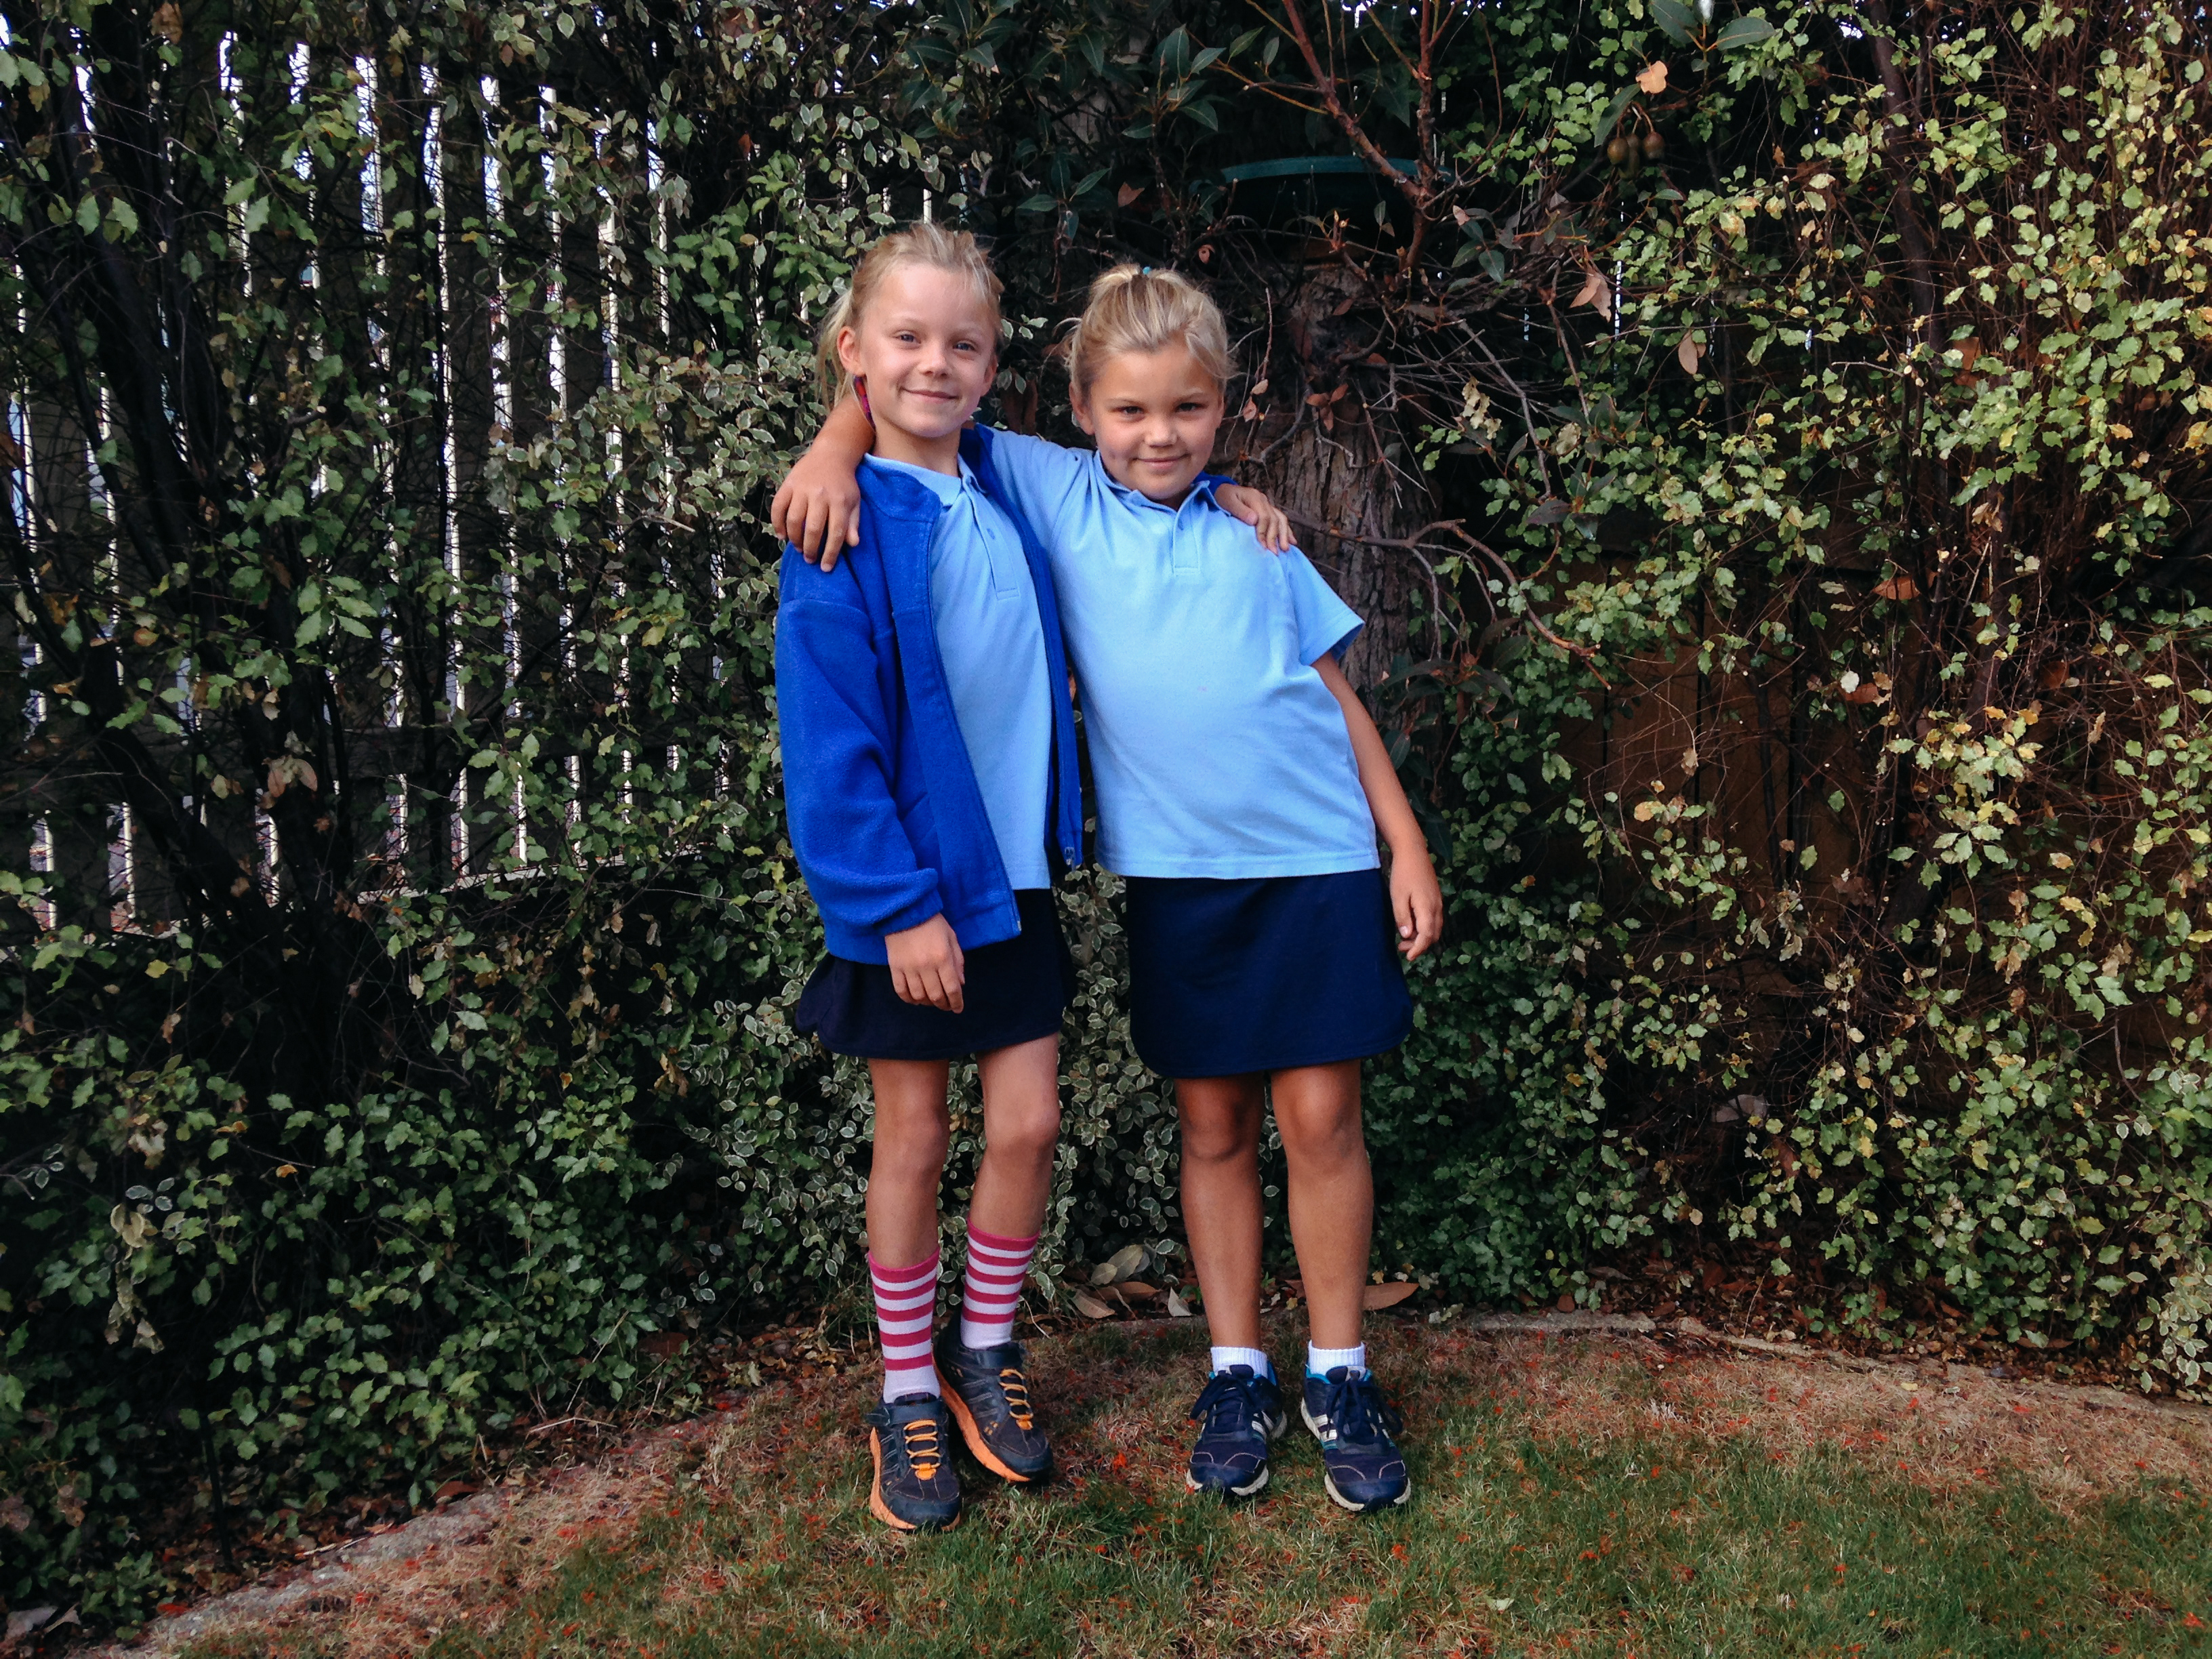 Deux sœurs portant des uniformes scolaires se tiennent ensemble, les bras enlacés | Source : Getty Images